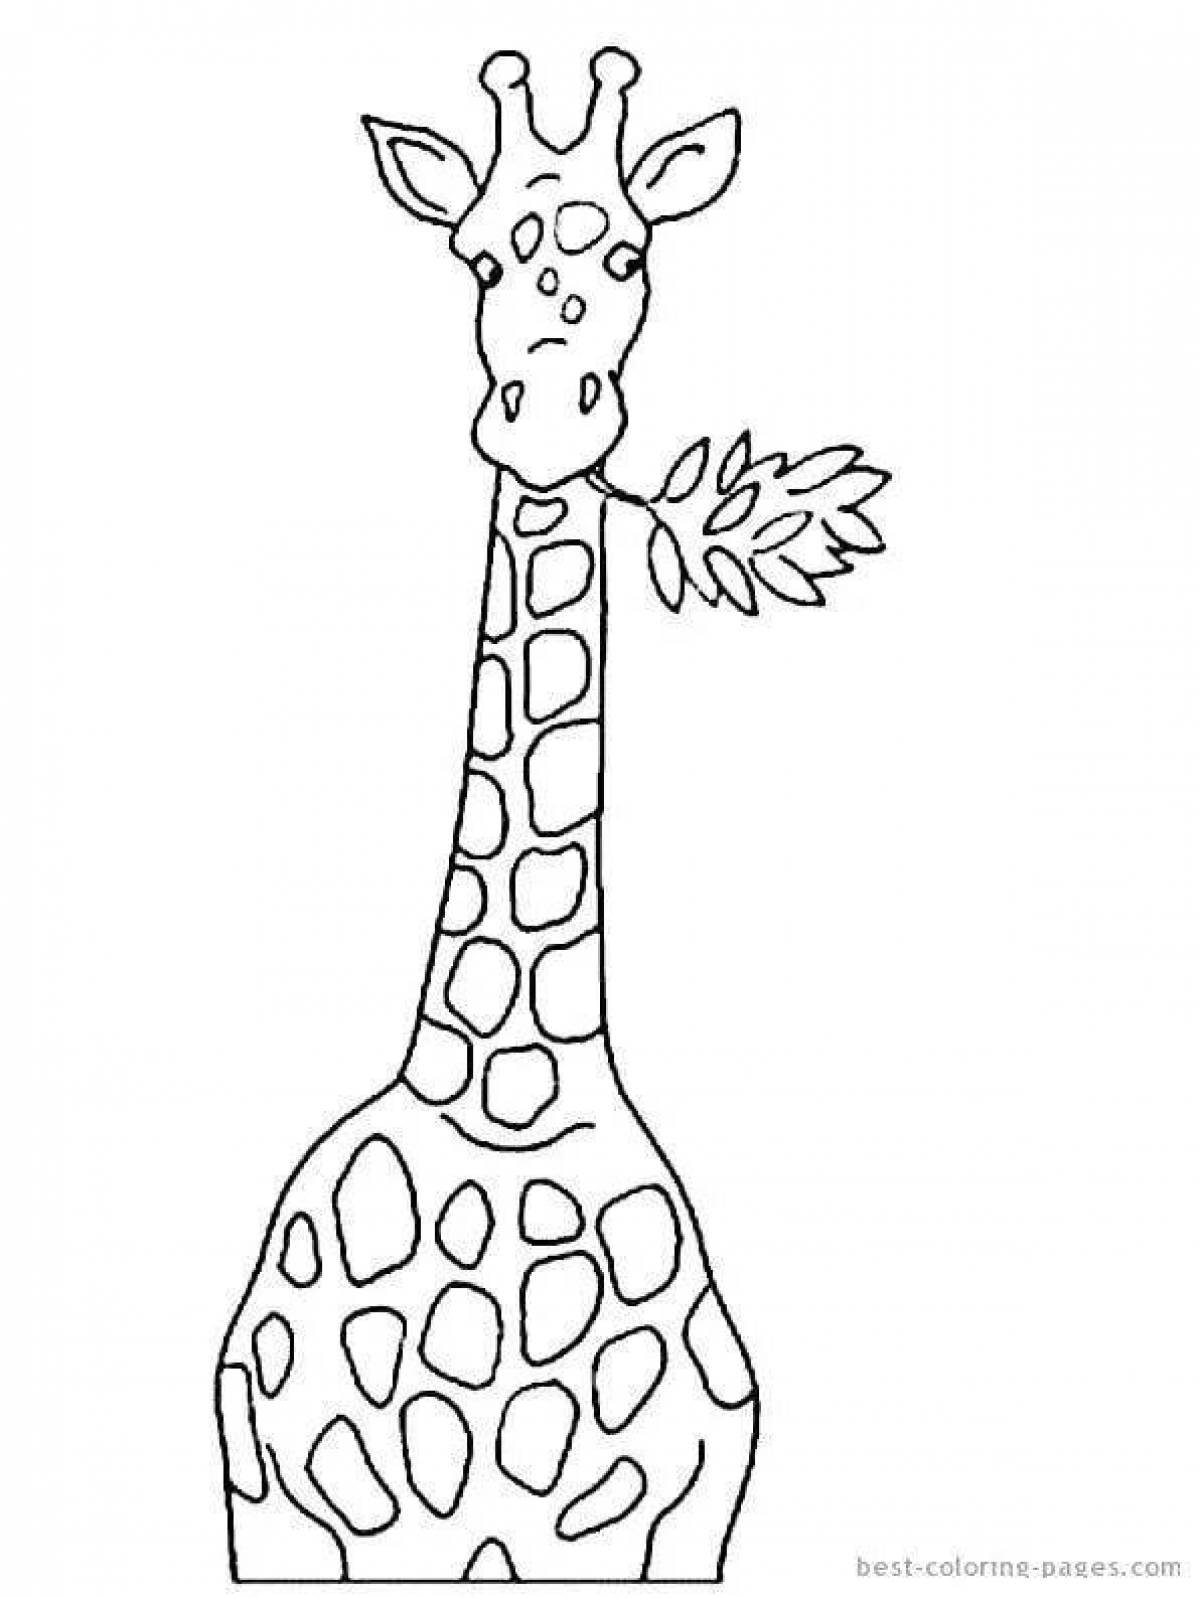 Веселый Жираф раскраска